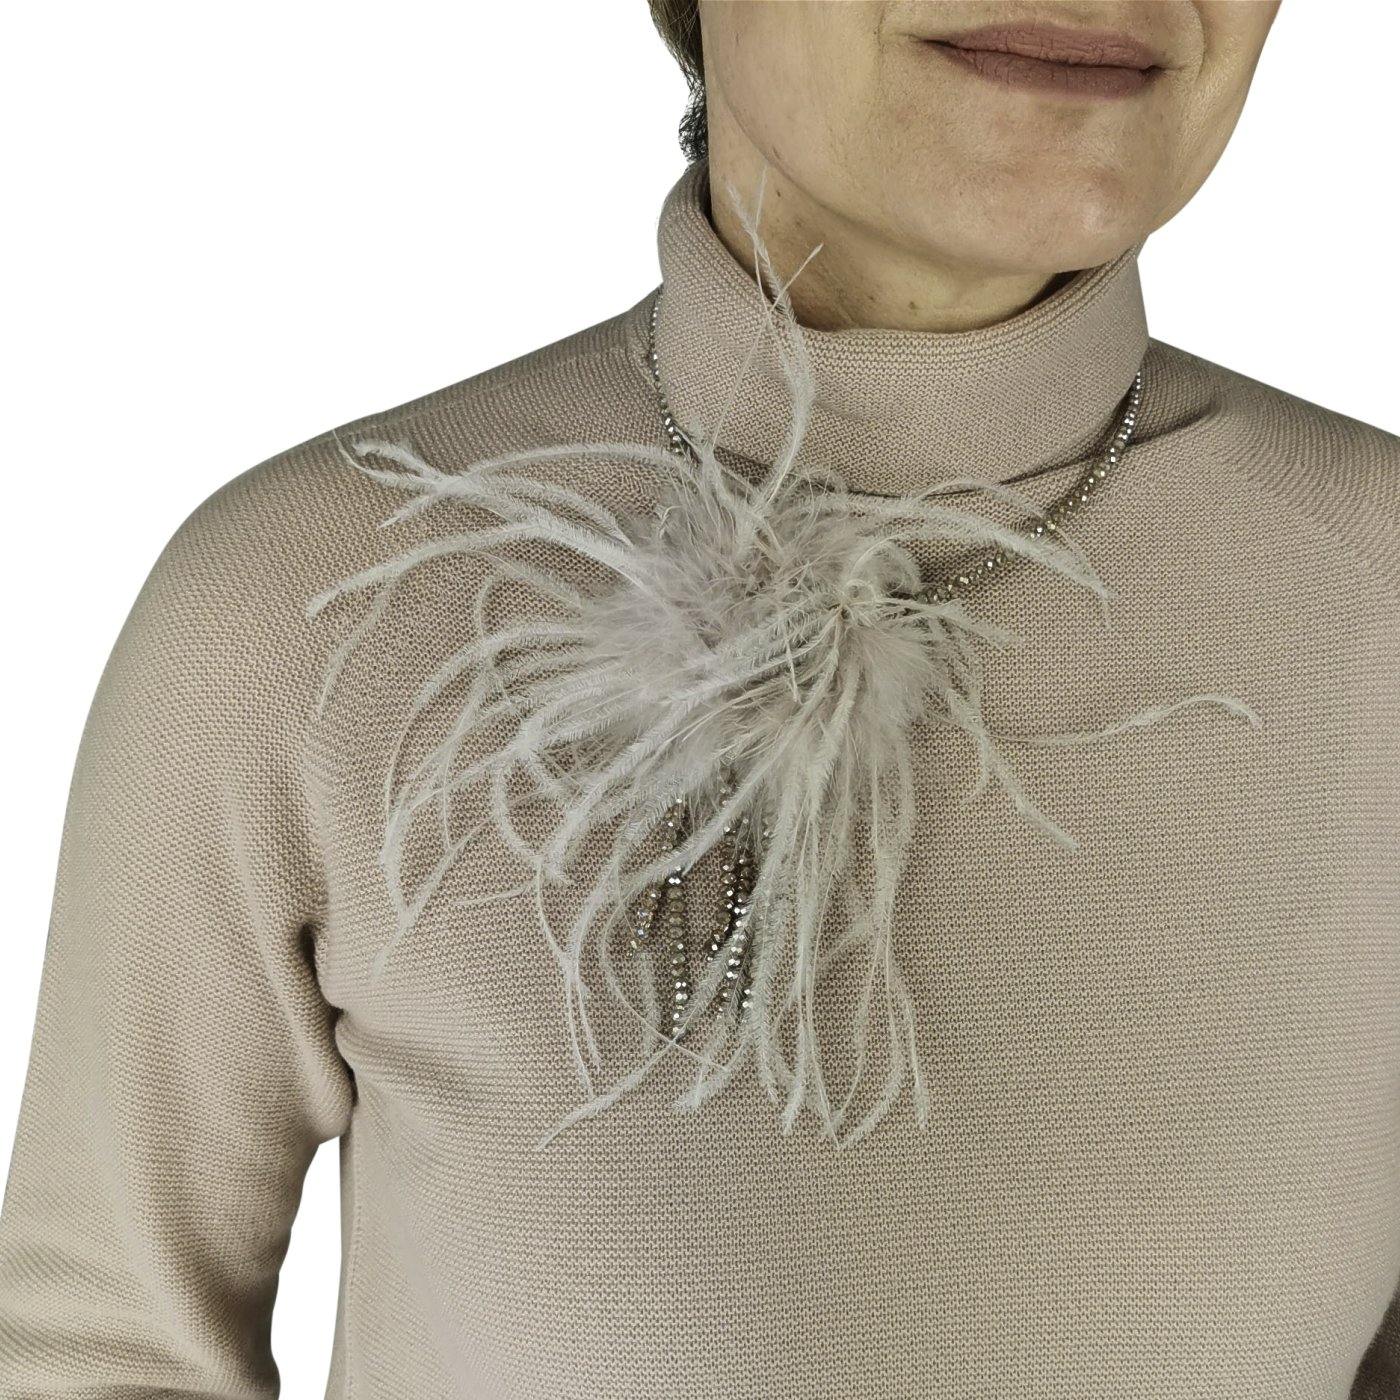 Exklusive Damen Halskette mit aufwendigem Verschluß - C. Strauch Mode 